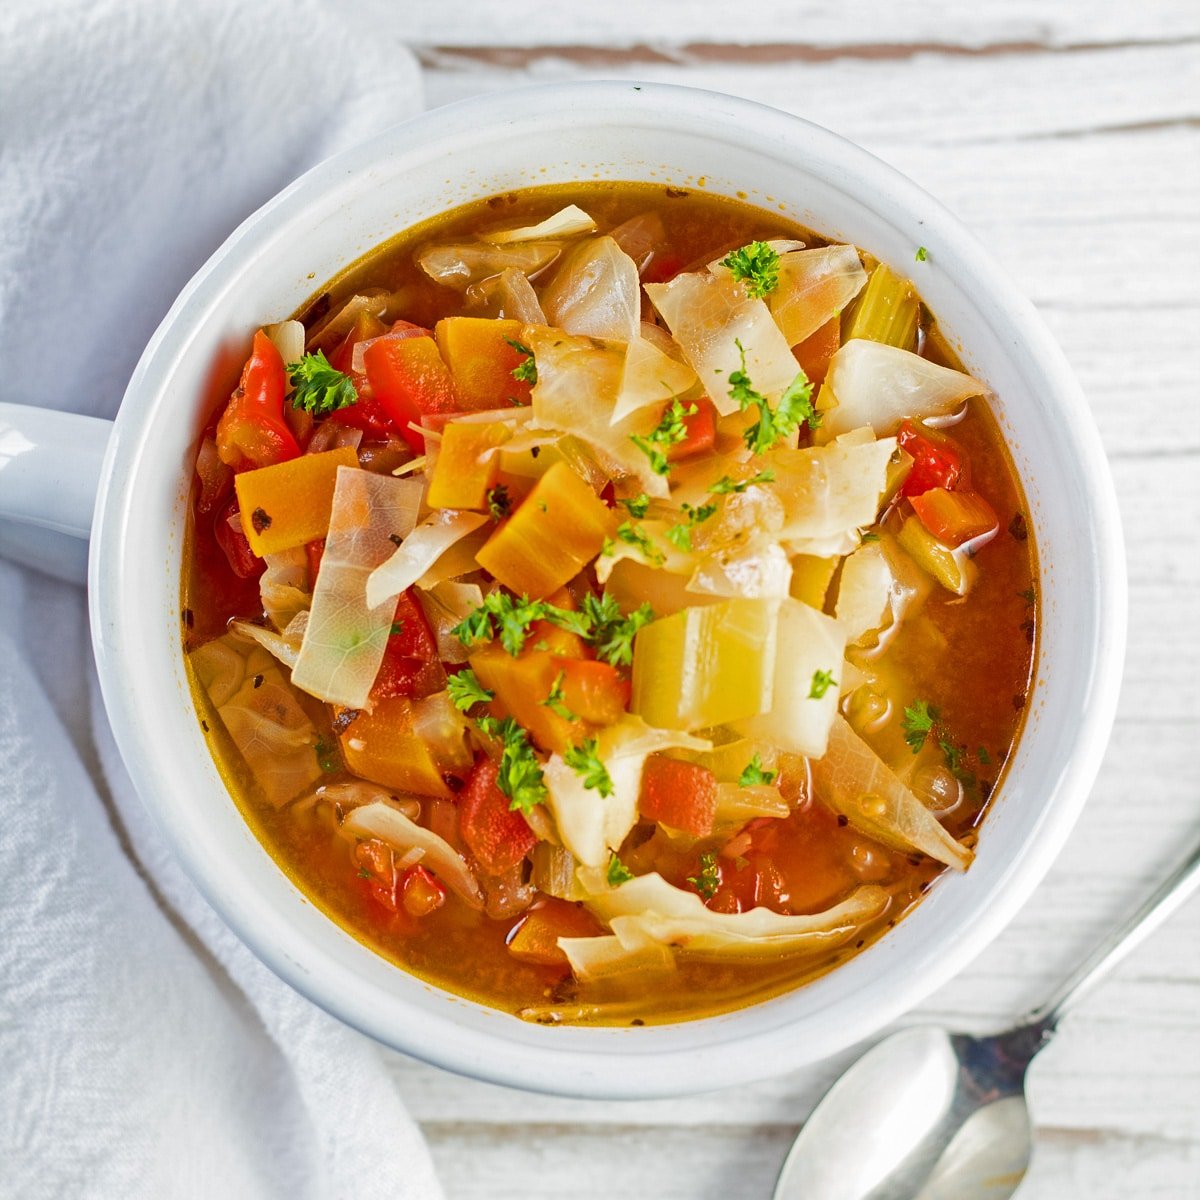 Лучший простой в приготовлении рецепт детокс-супа с овощами в пикантном бульоне, который подается в белой миске.